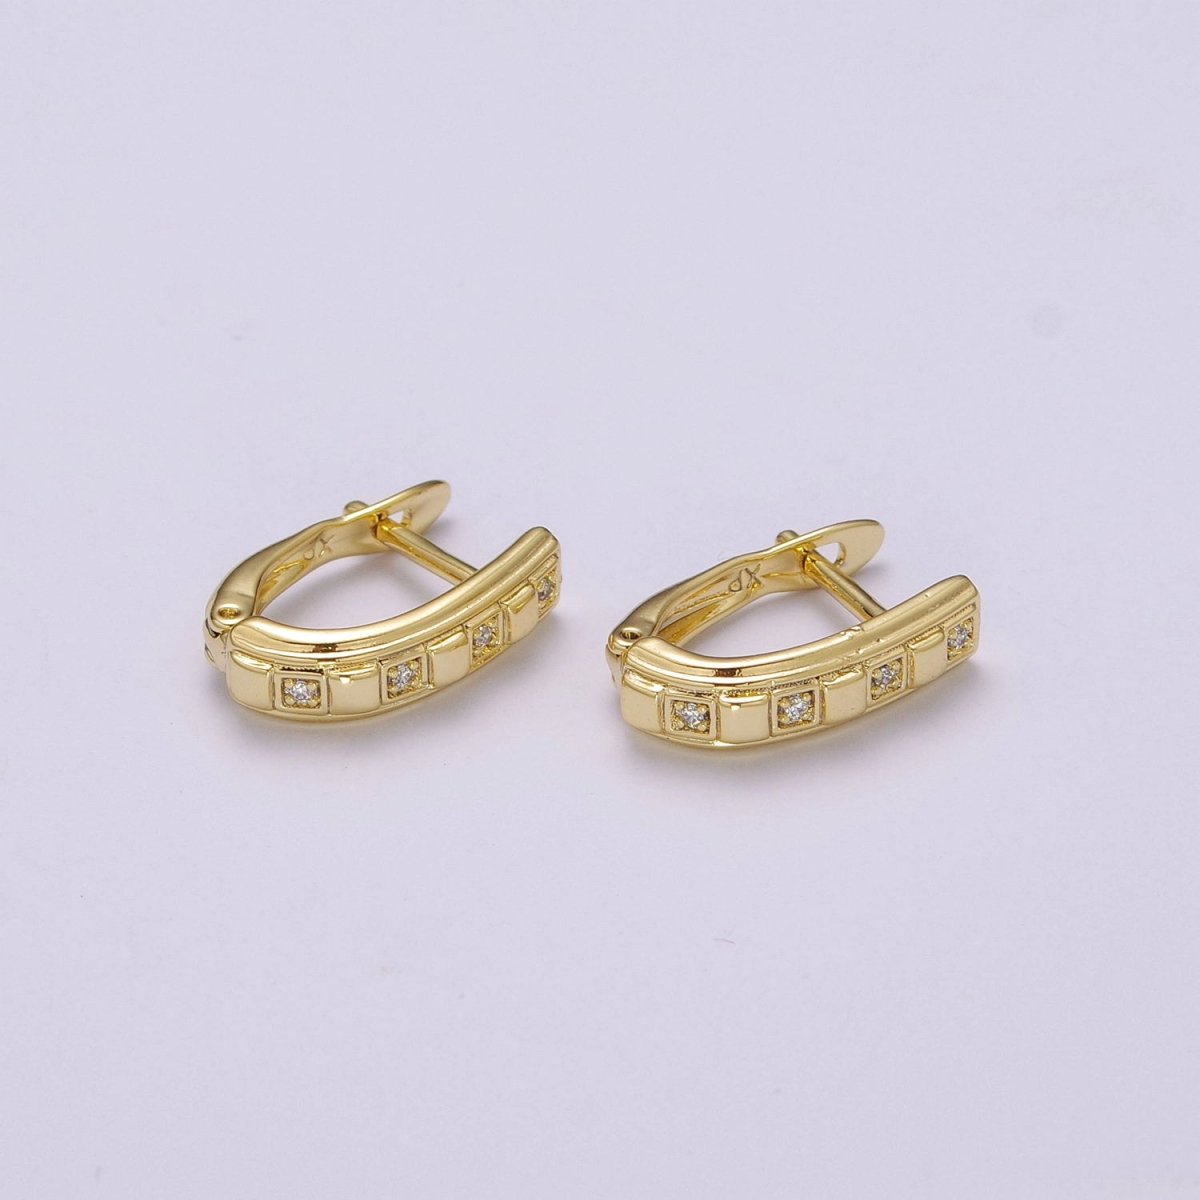 OS Dainty CZ Hoop Earrings Hypoallergenic 14K Gold Filled Huggie Hoop Earrings for Women T-206 - DLUXCA